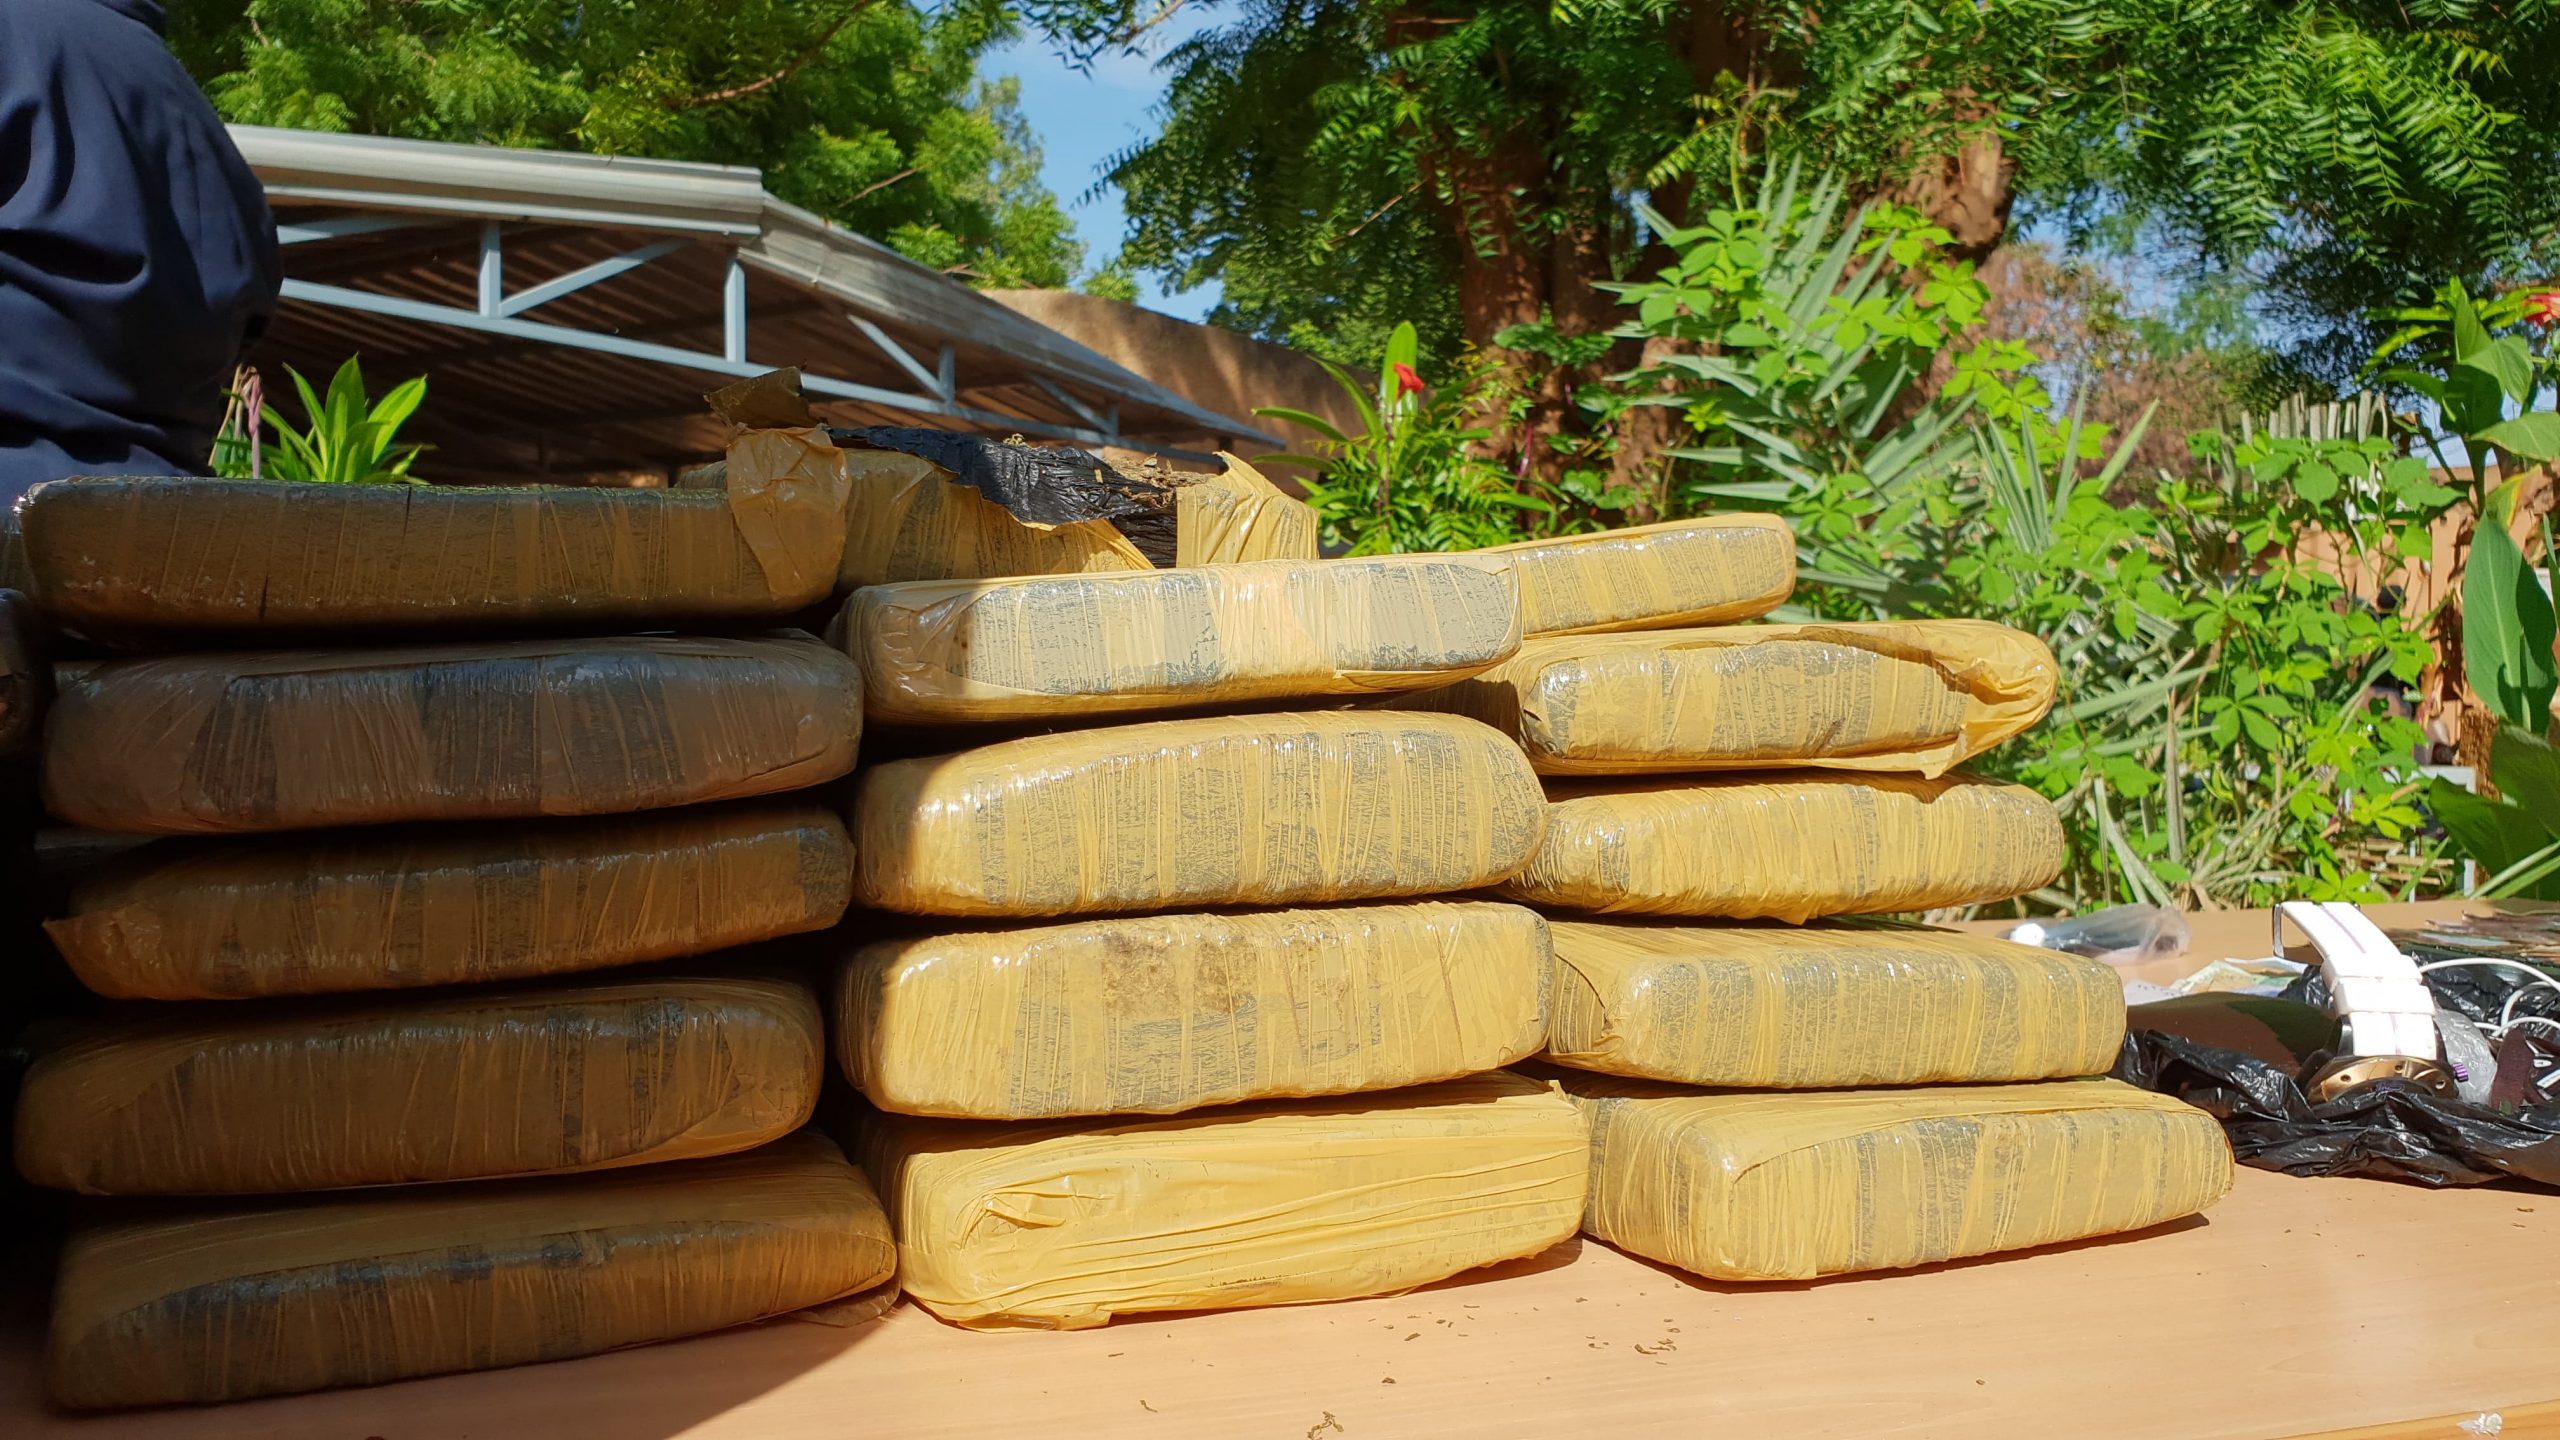 Comment faire face à la consommation de la drogue par les jeunes à Niamey ?